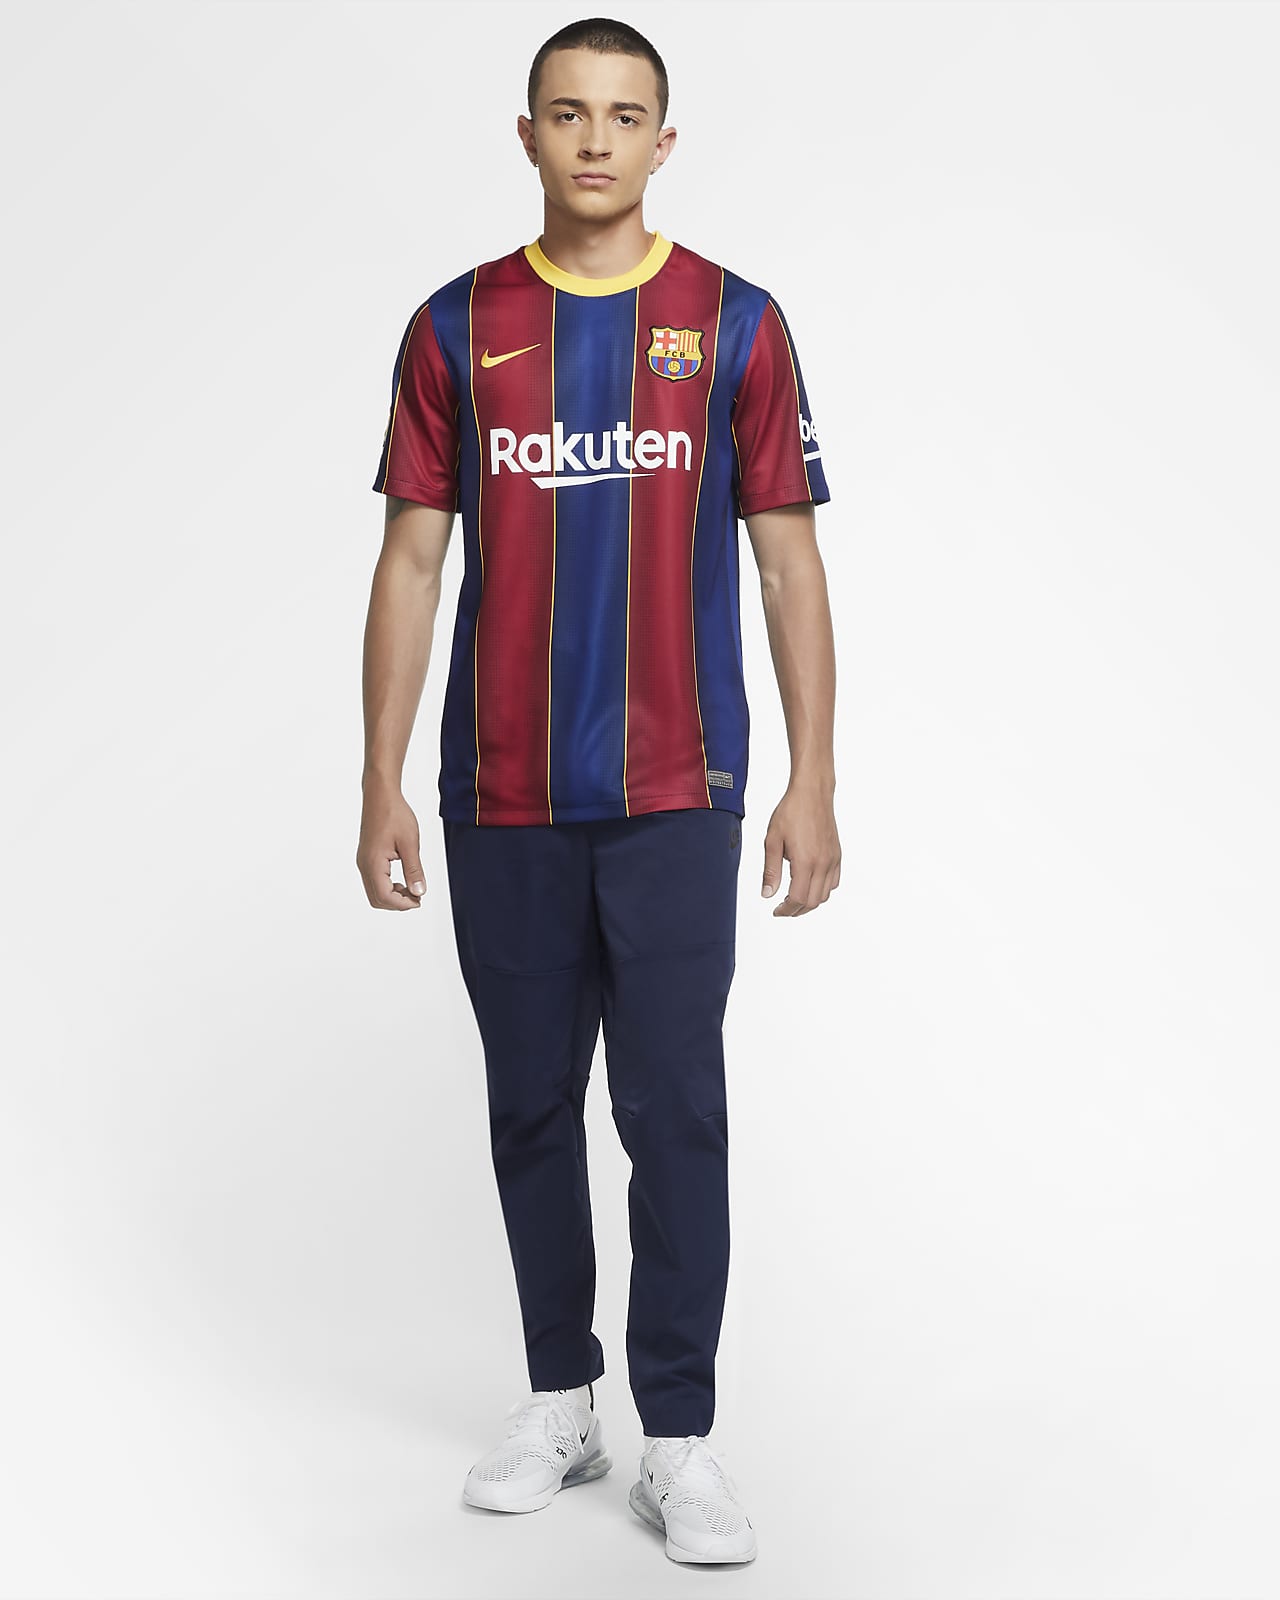 Nike公式 Fc バルセロナ 21 スタジアム ホーム メンズ サッカーユニフォーム オンラインストア 通販サイト